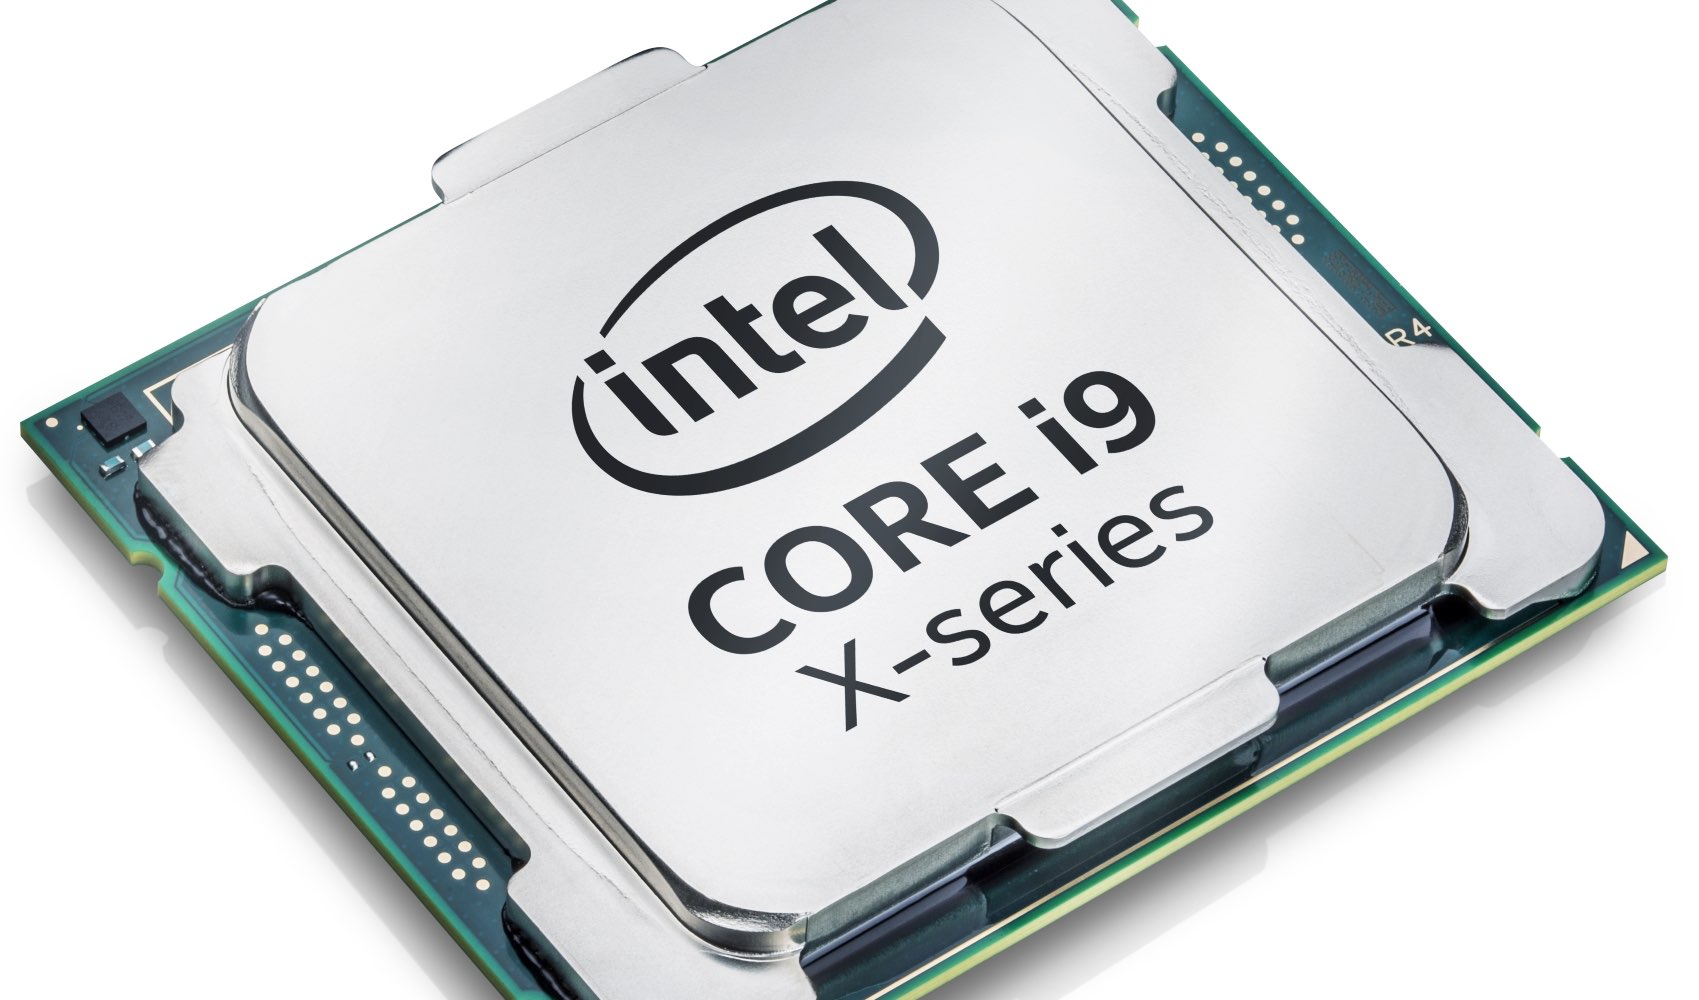 Intel unveils new Core X desktop processors, including flagship Core i9